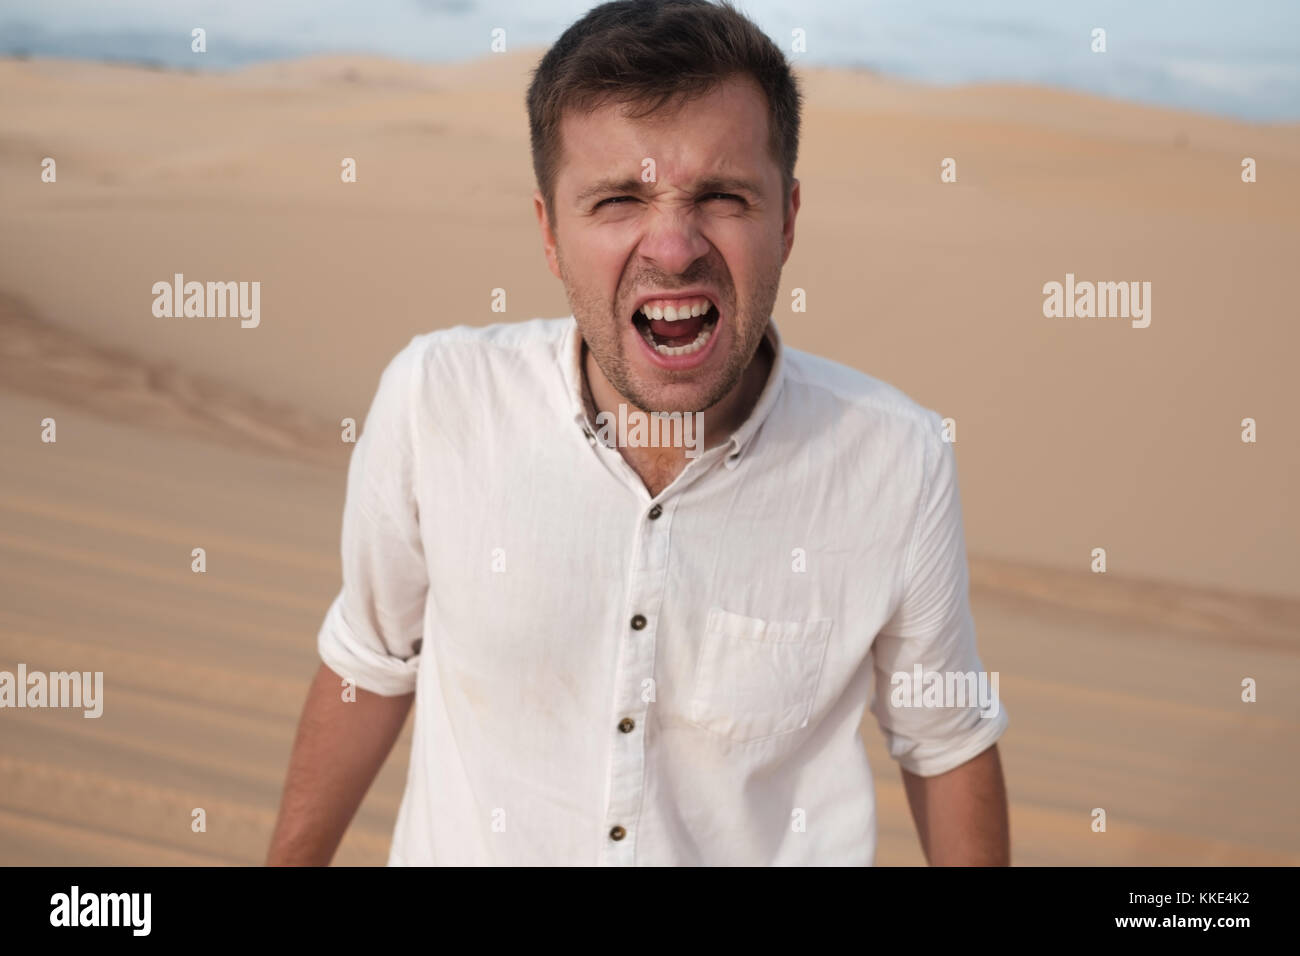 Homme en colère crier accusait quelqu'un standing in desert Banque D'Images